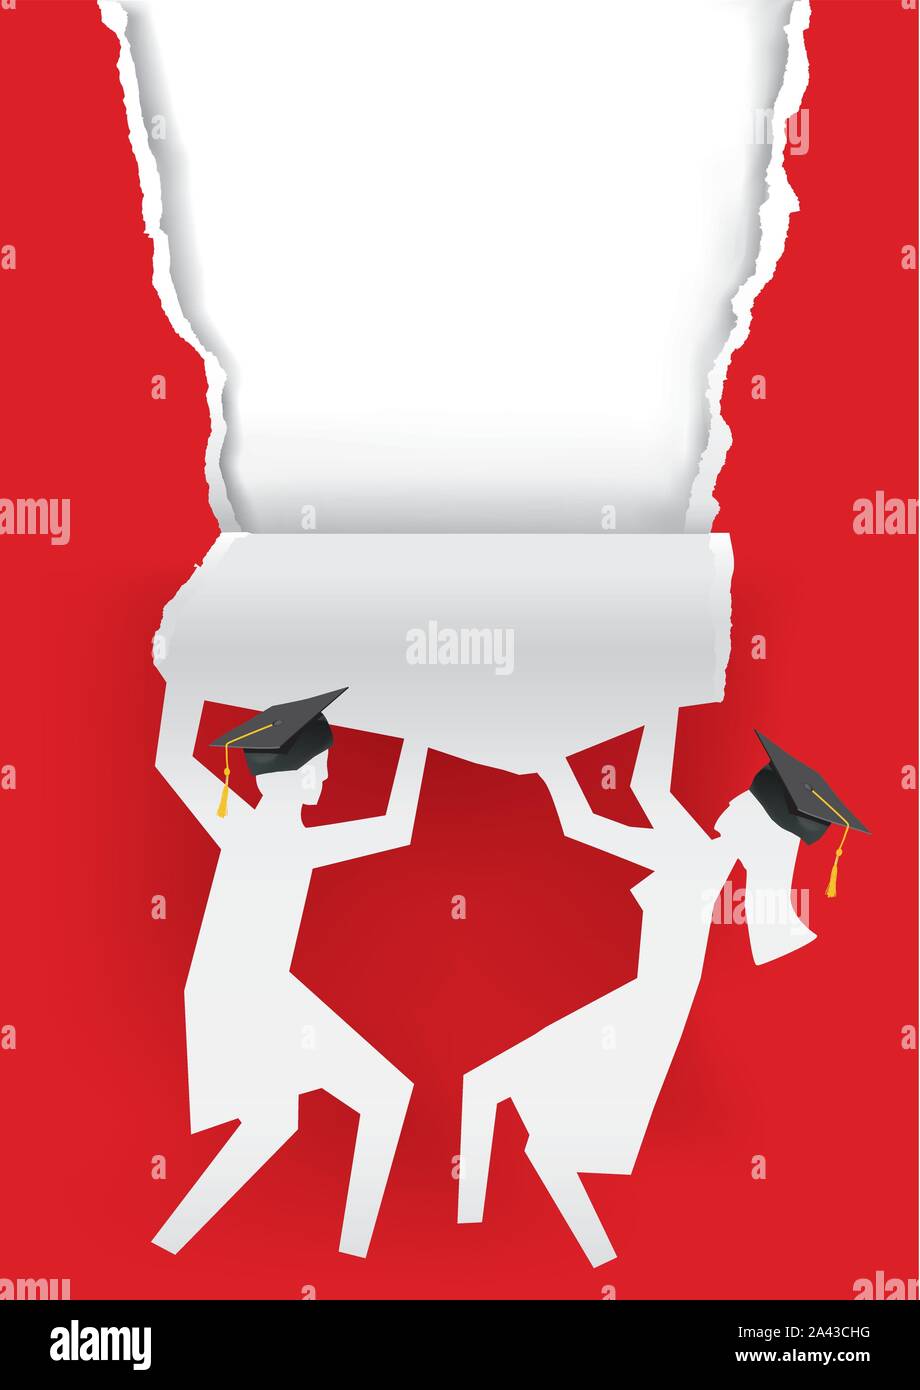 Amd Fille Garçon diplômés, déchiré papier rouge arrière-plan. Illustration de deux étudiants silhouettes de papier déchiré avec mortier. Modèle pour l'exer Illustration de Vecteur